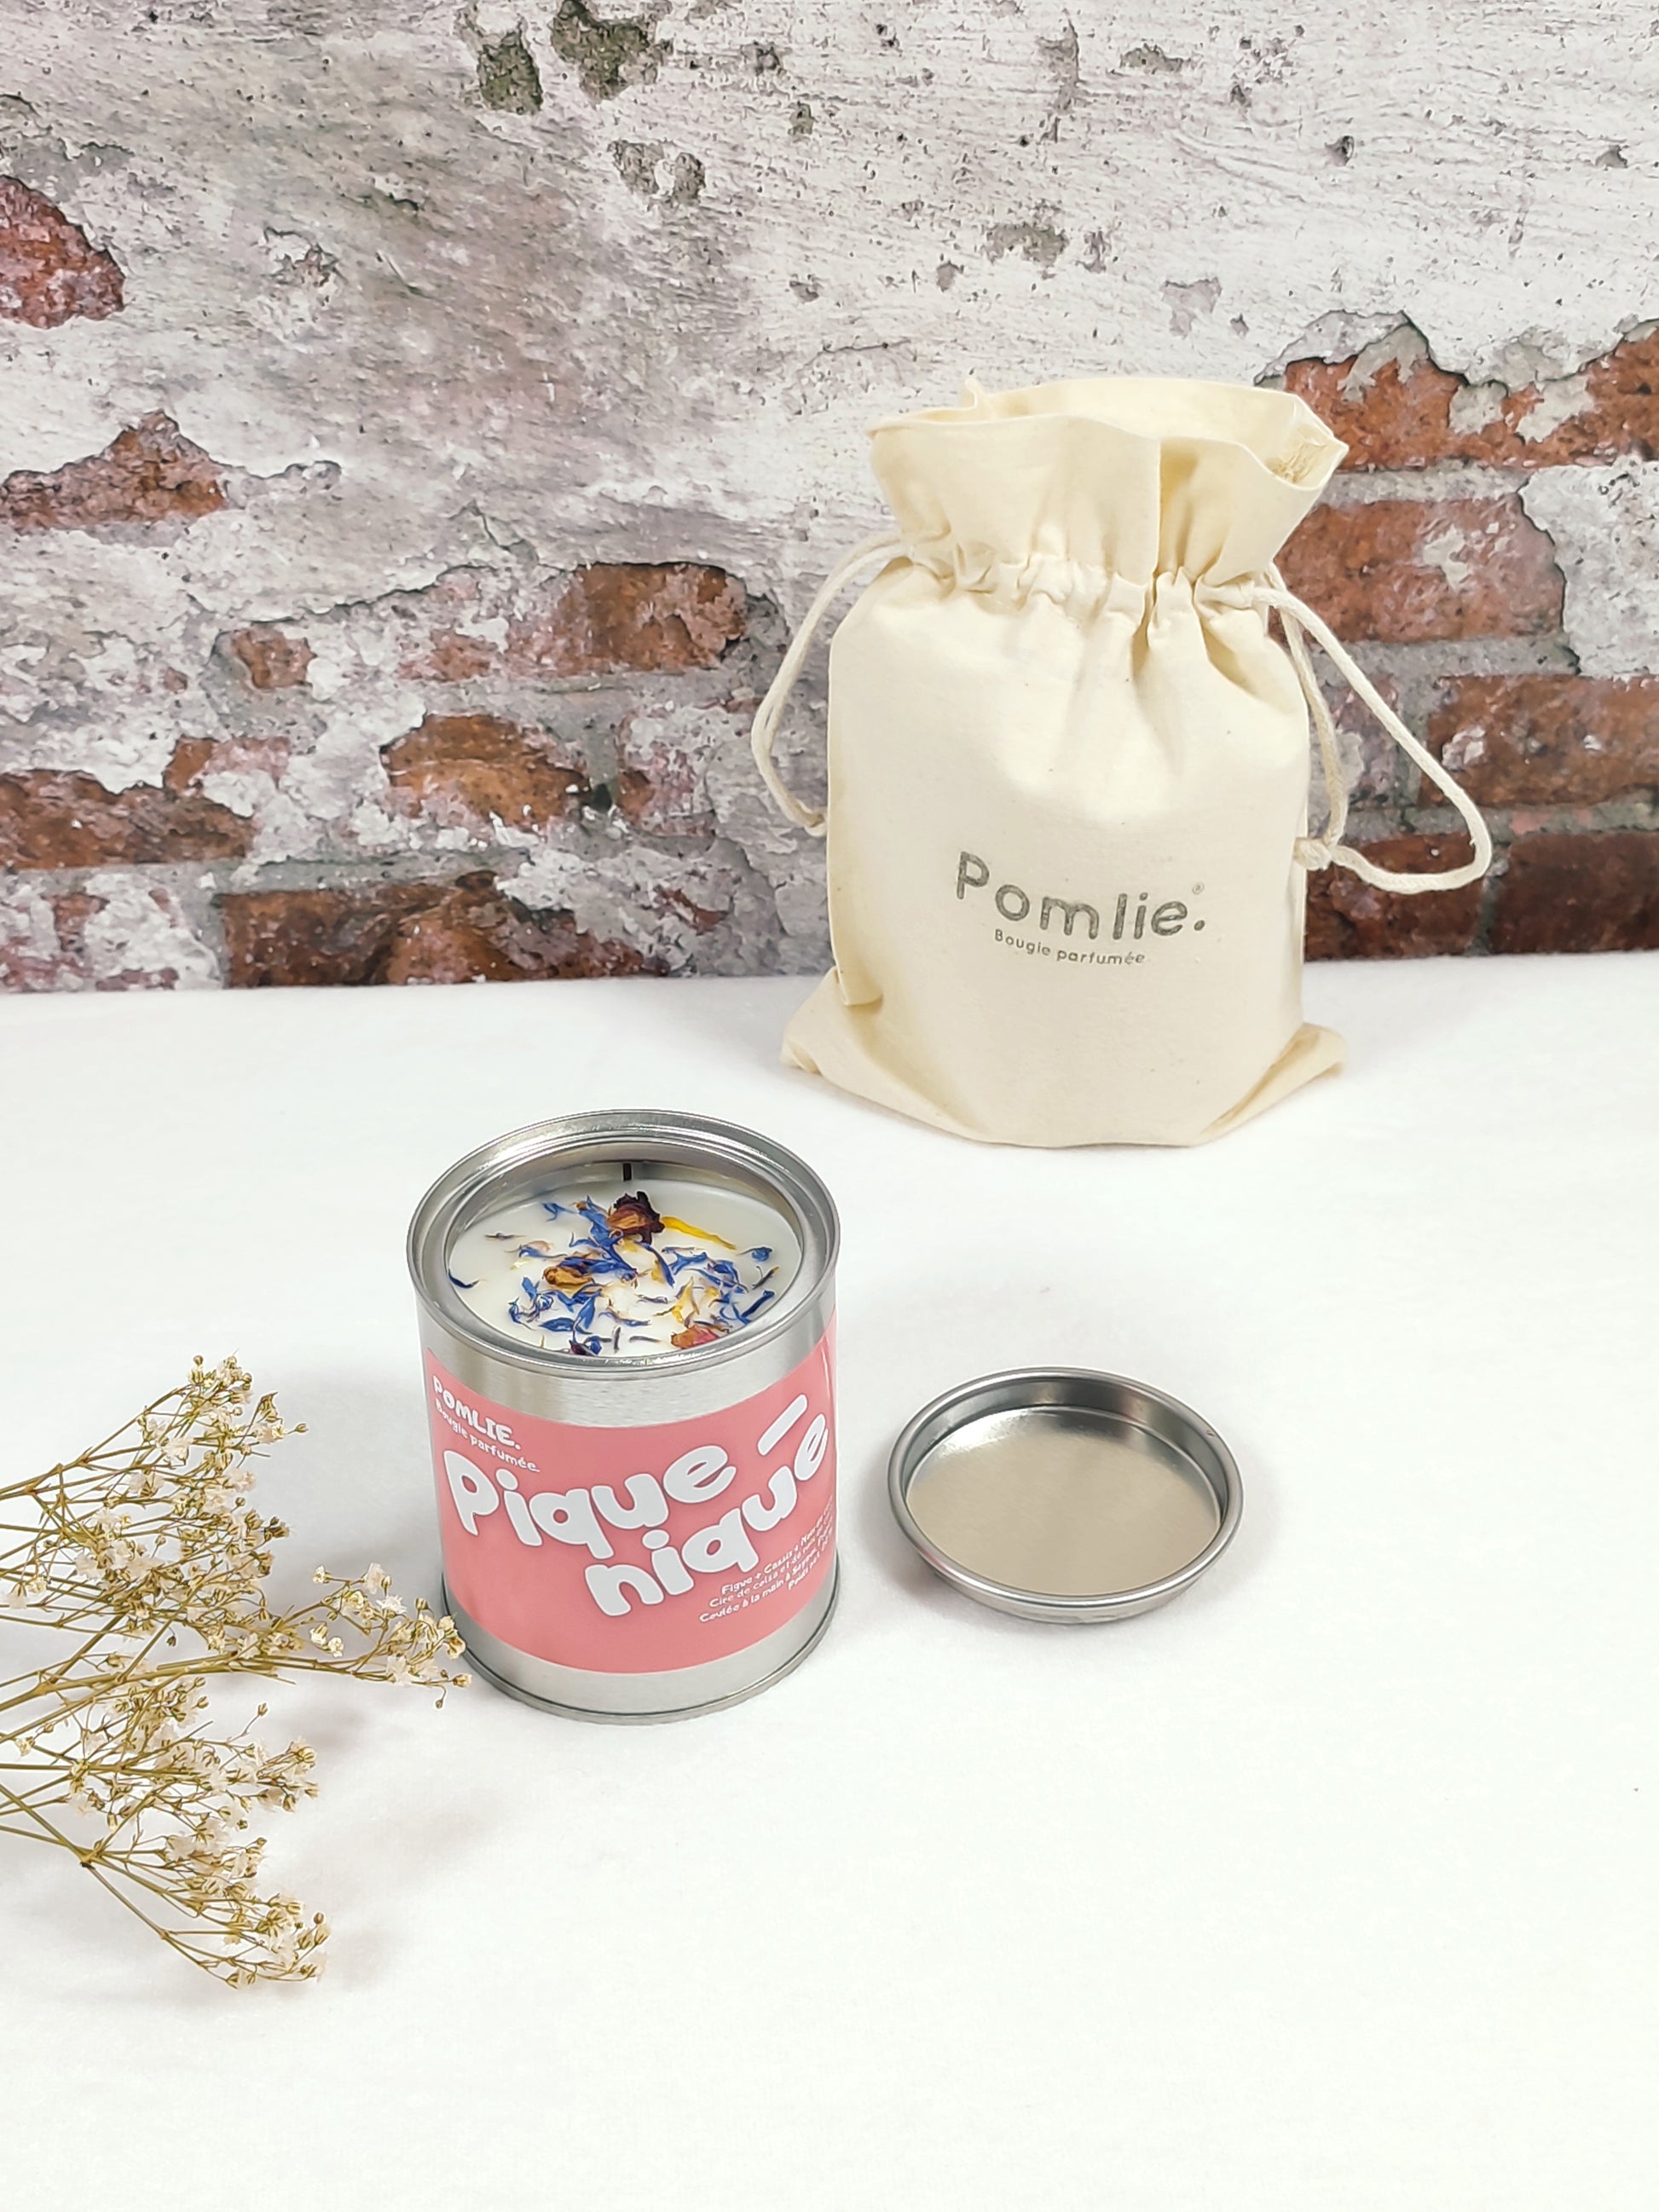 Bougie Pomlie Pique-nique dans une boîte en métal rose avec sac en coton.